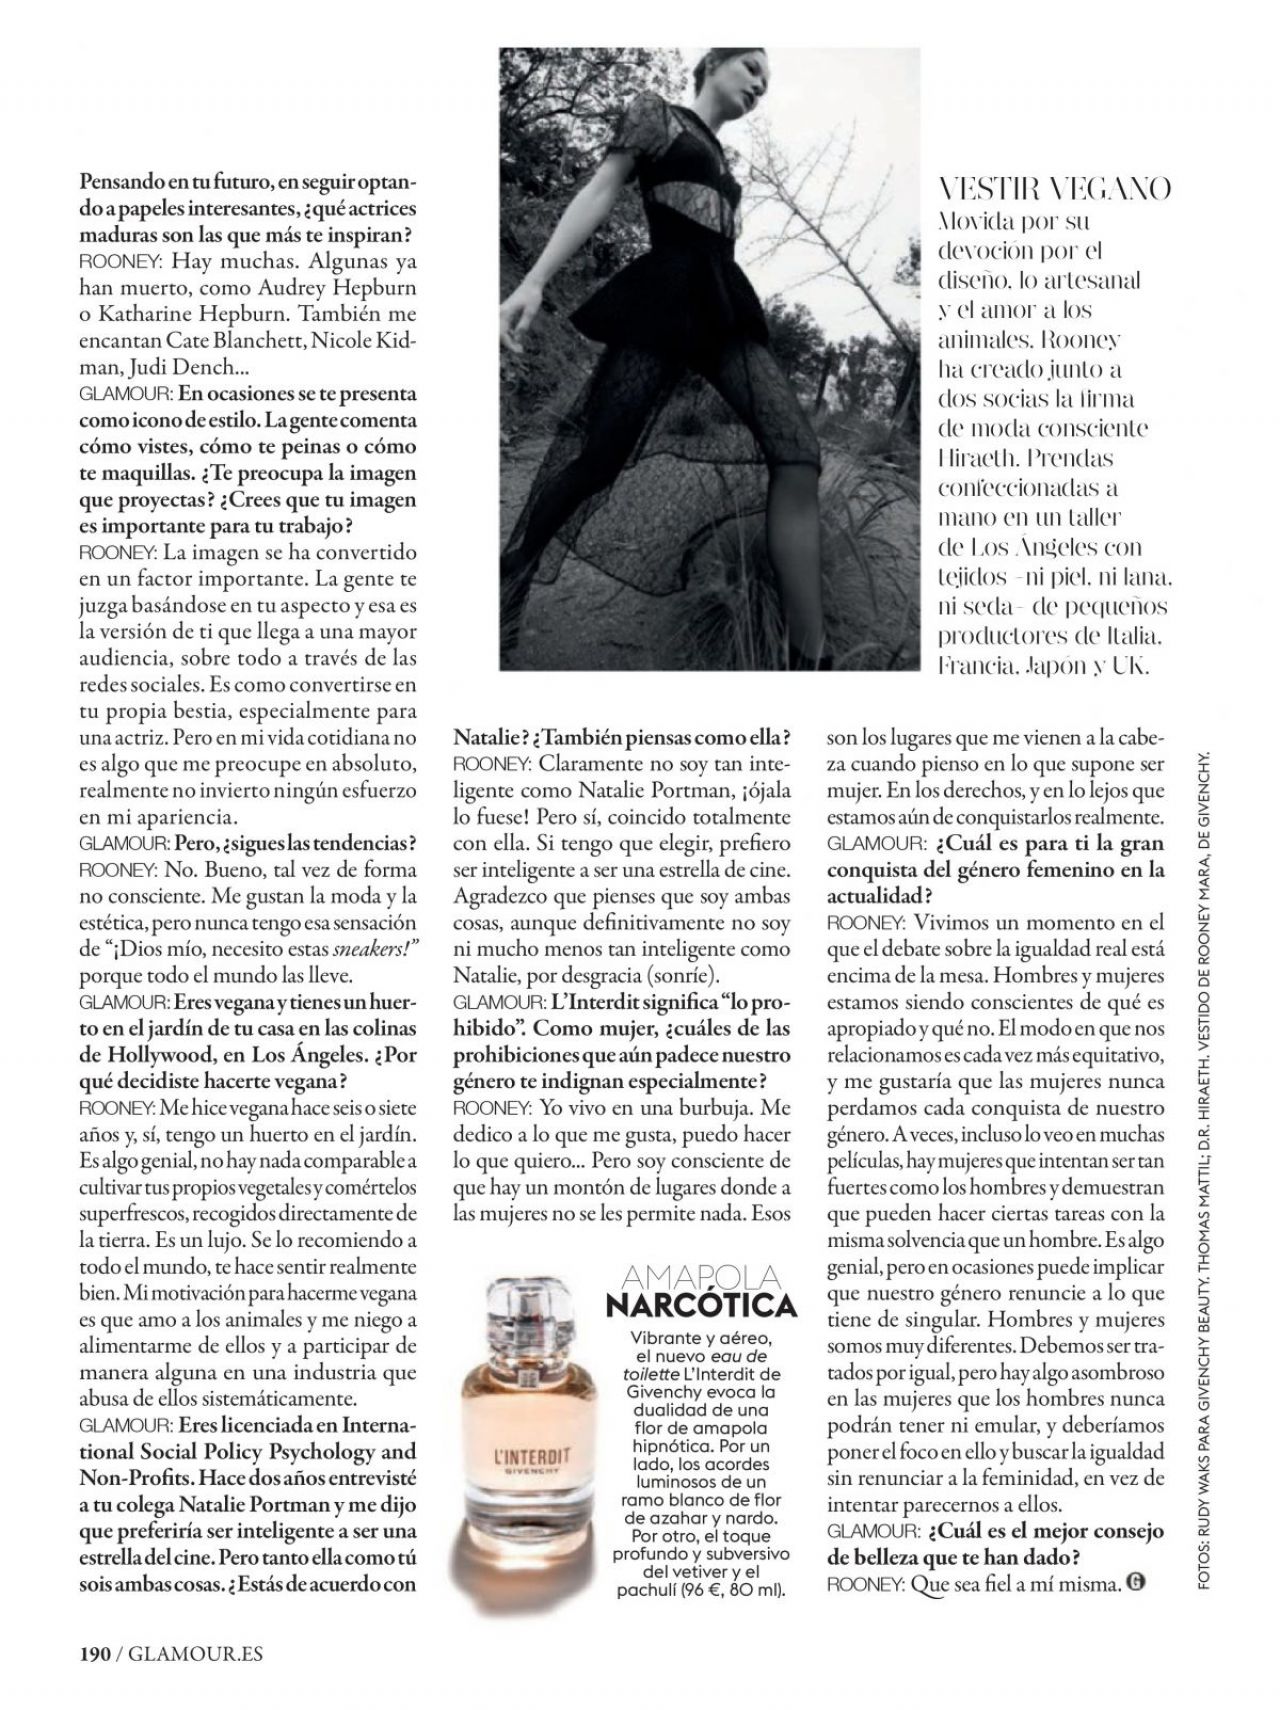 Rooney Mara - Glamour Magazine Spain September 2019 Issue • CelebMafia